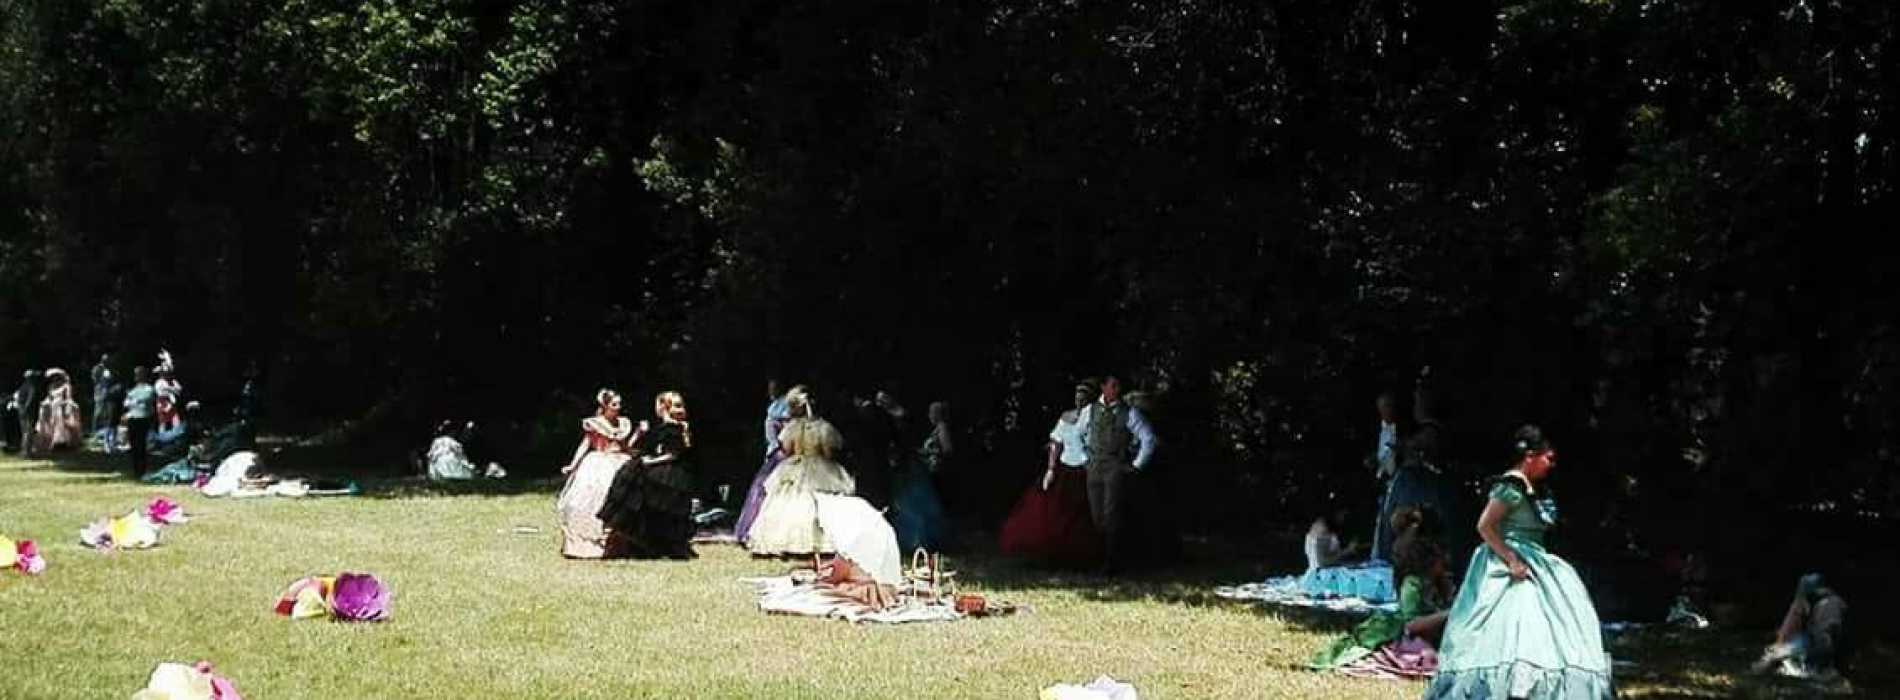 Reggia di Caserta, picnic nel parco al sapore di Merienda Real